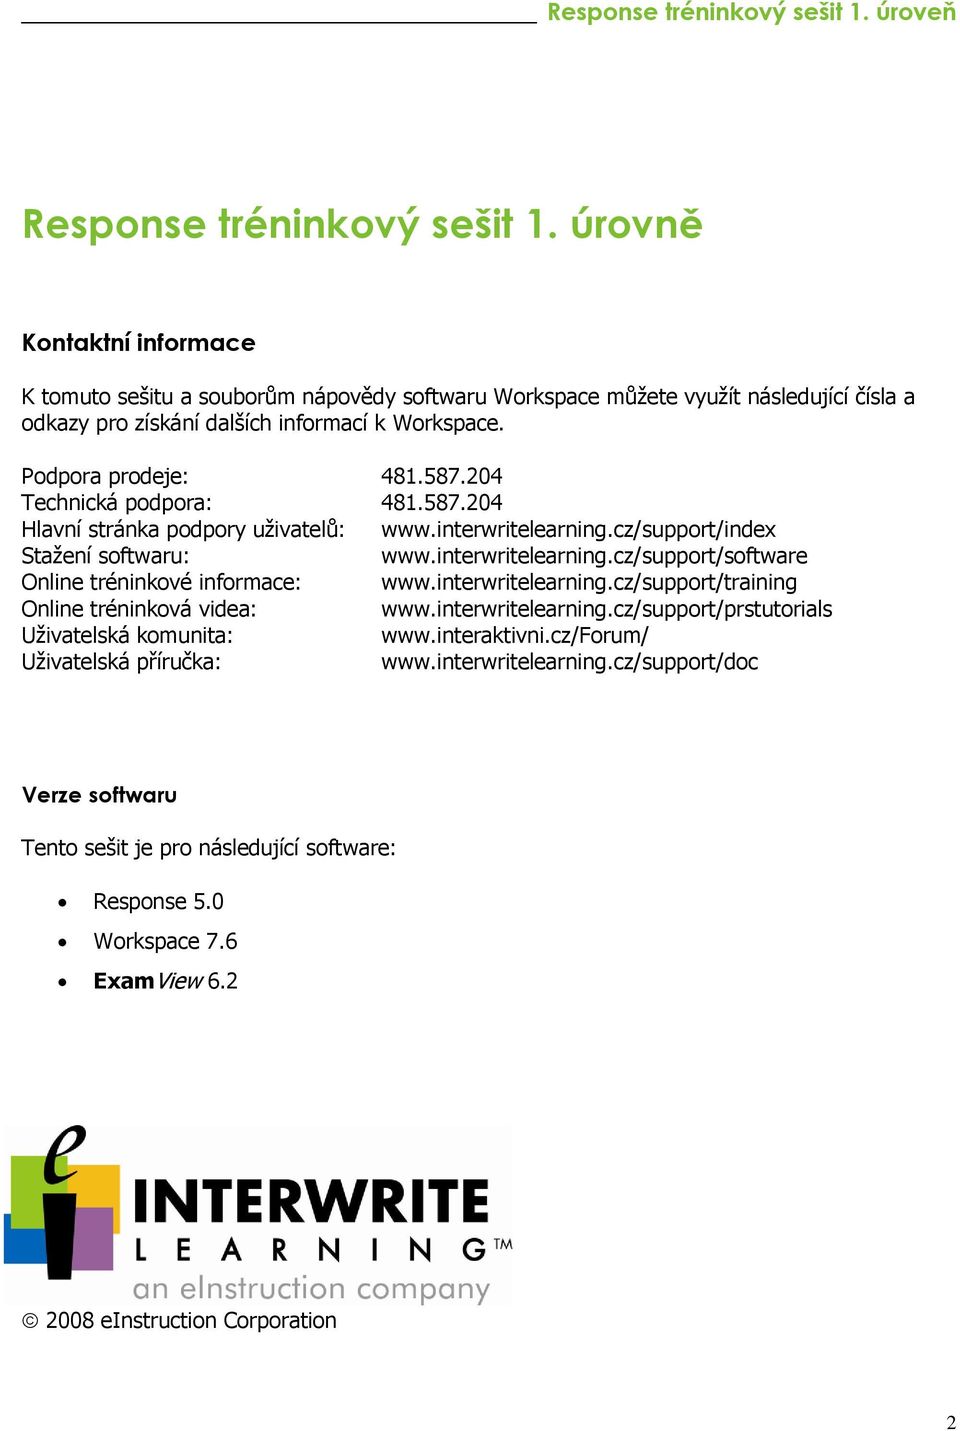 204 Technická podpora: 481.587.204 Hlavní stránka podpory uživatelů: www.interwritelearning.cz/support/index Stažení softwaru: www.interwritelearning.cz/support/software Online tréninkové informace: www.